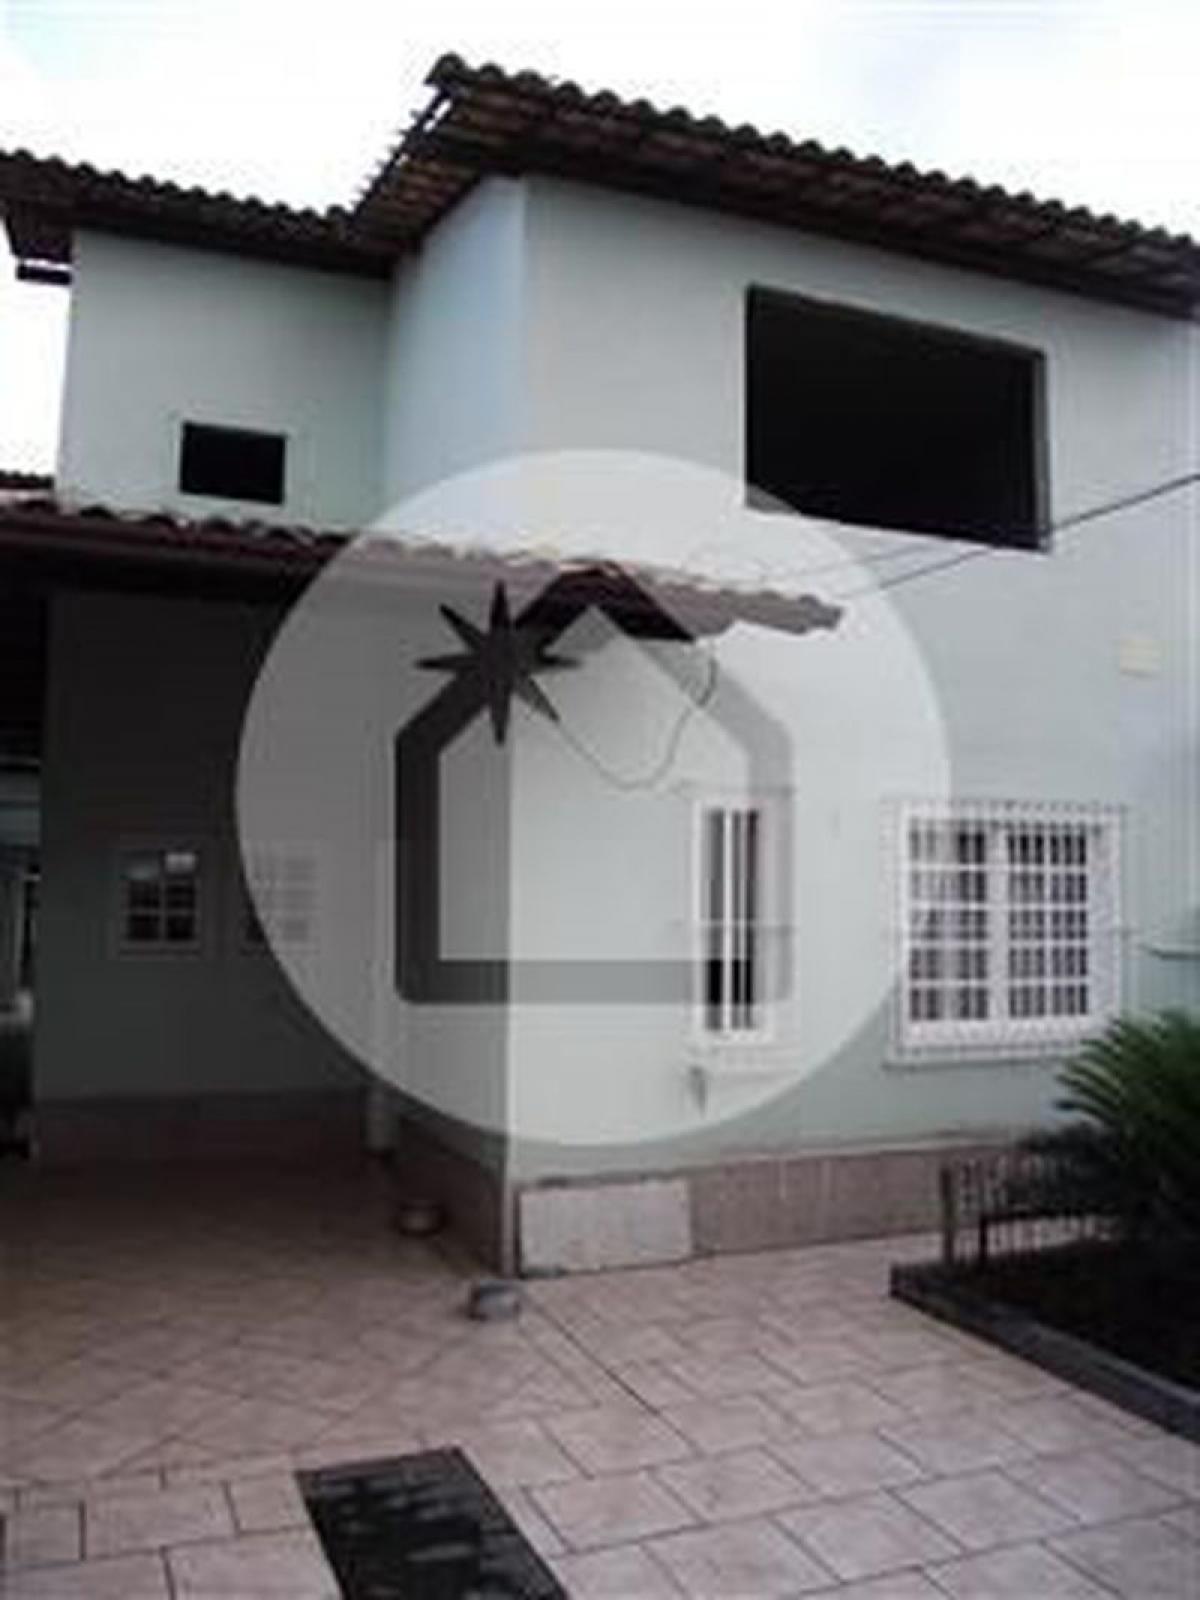 Picture of Home For Sale in Niteroi, Rio De Janeiro, Brazil